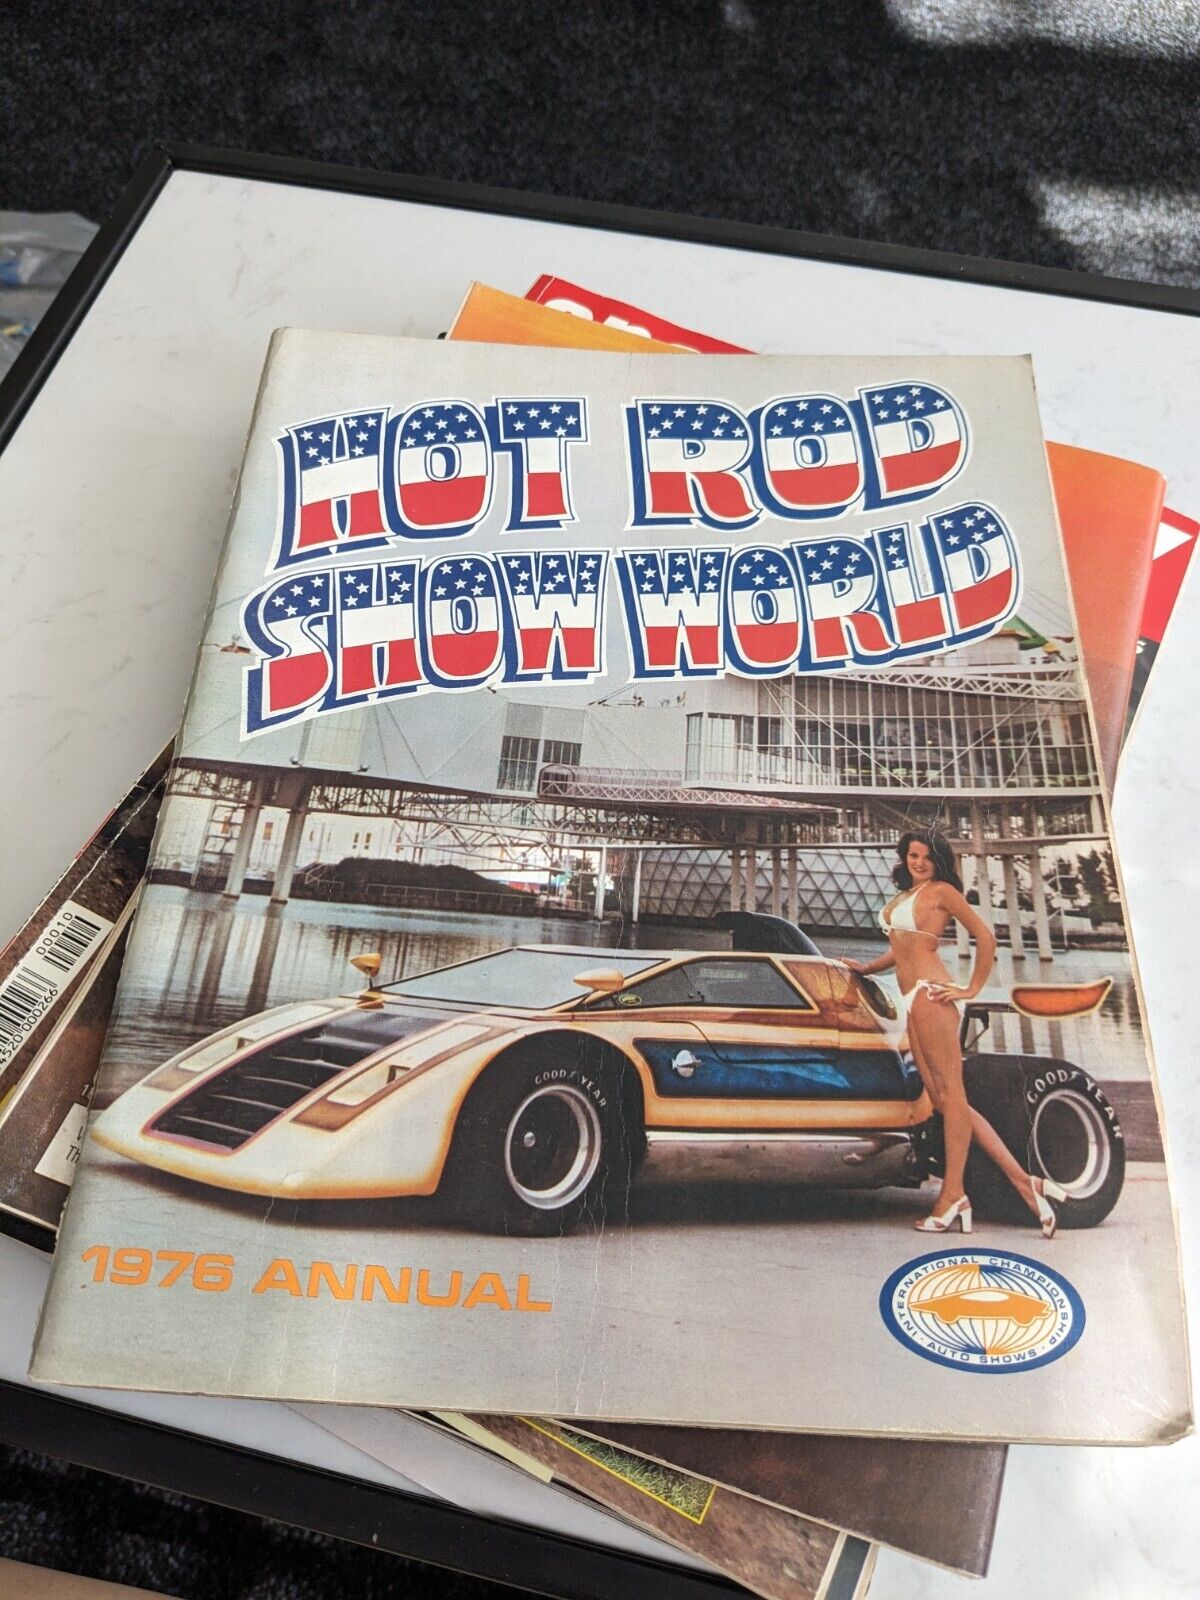 1976 Annual Spring Edition Hot Rod Showdown